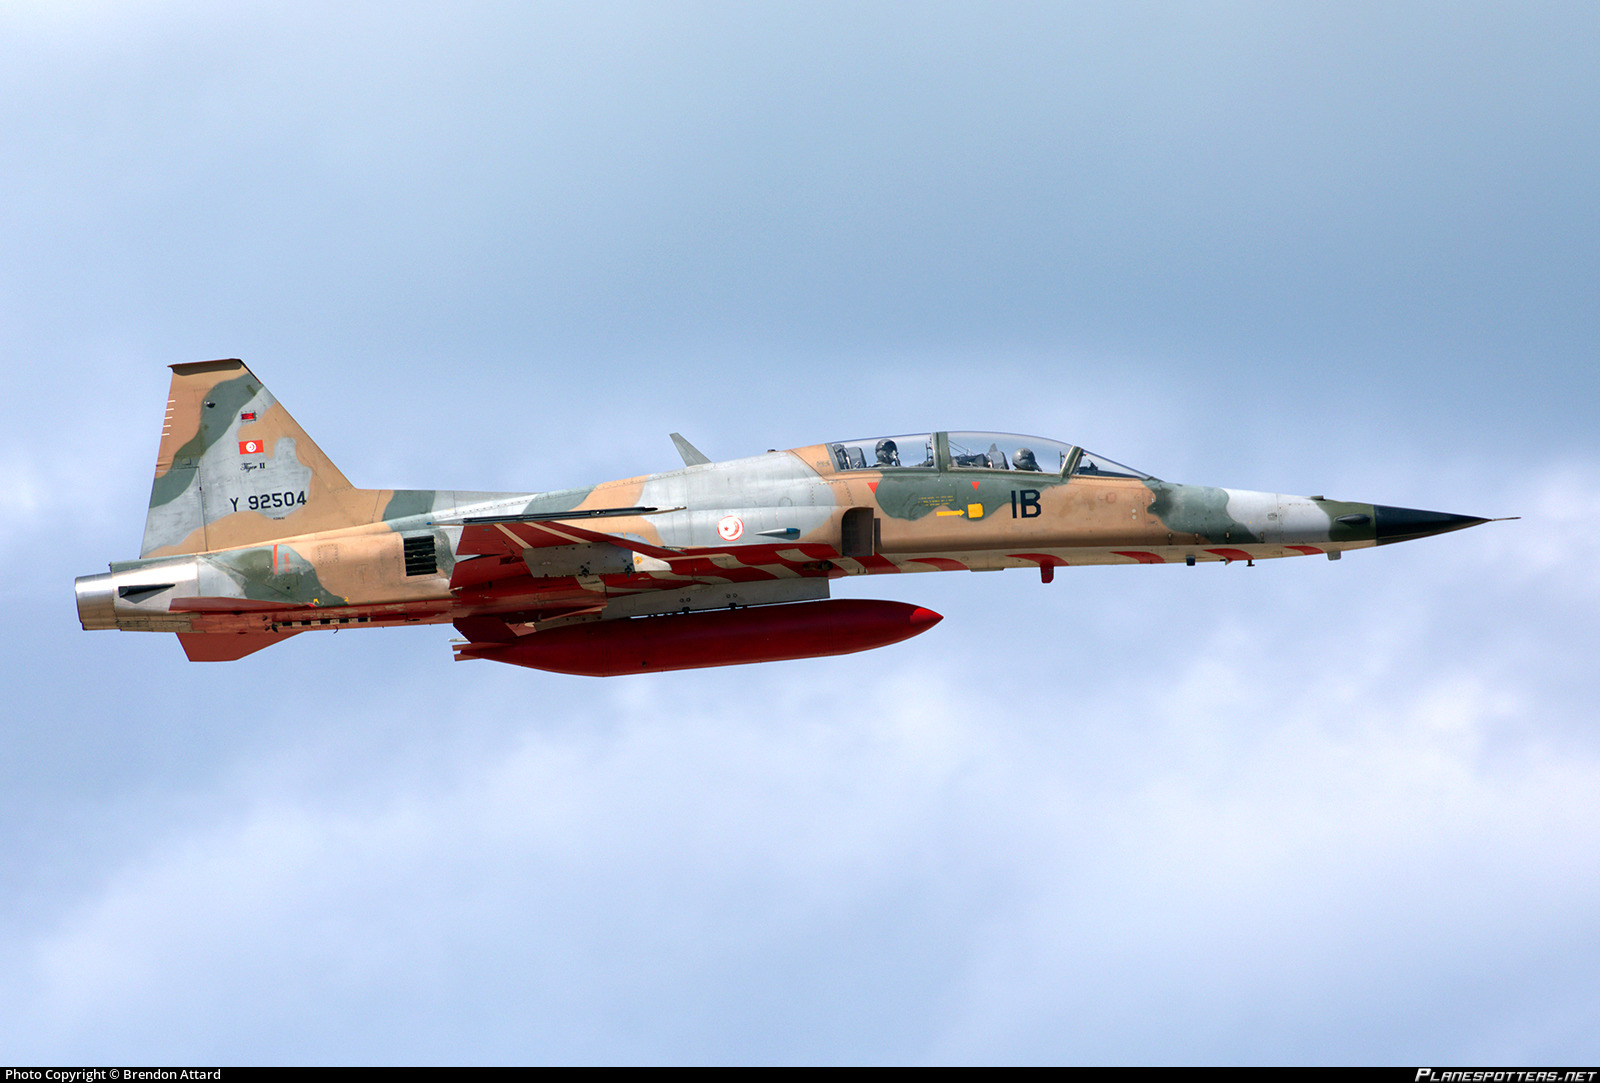 y92504-tunisian-air-force-northrop-f-5f-freedom-fighter_PlanespottersNet_1072319_369d9917dd_o.jpg